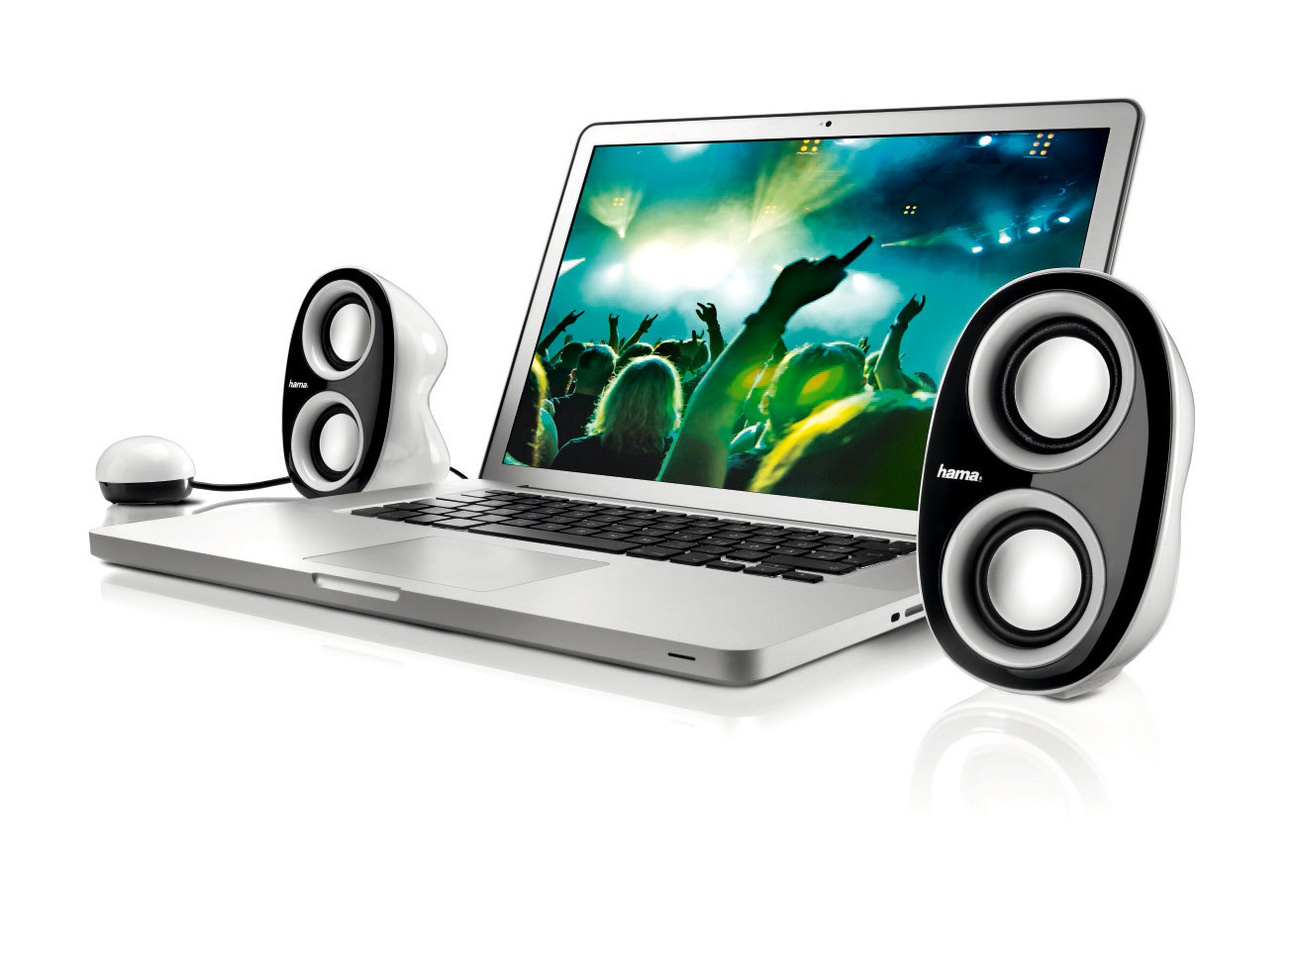 Hama PC-Lautsprecher Farbe: Schwarz Weiß bestellen